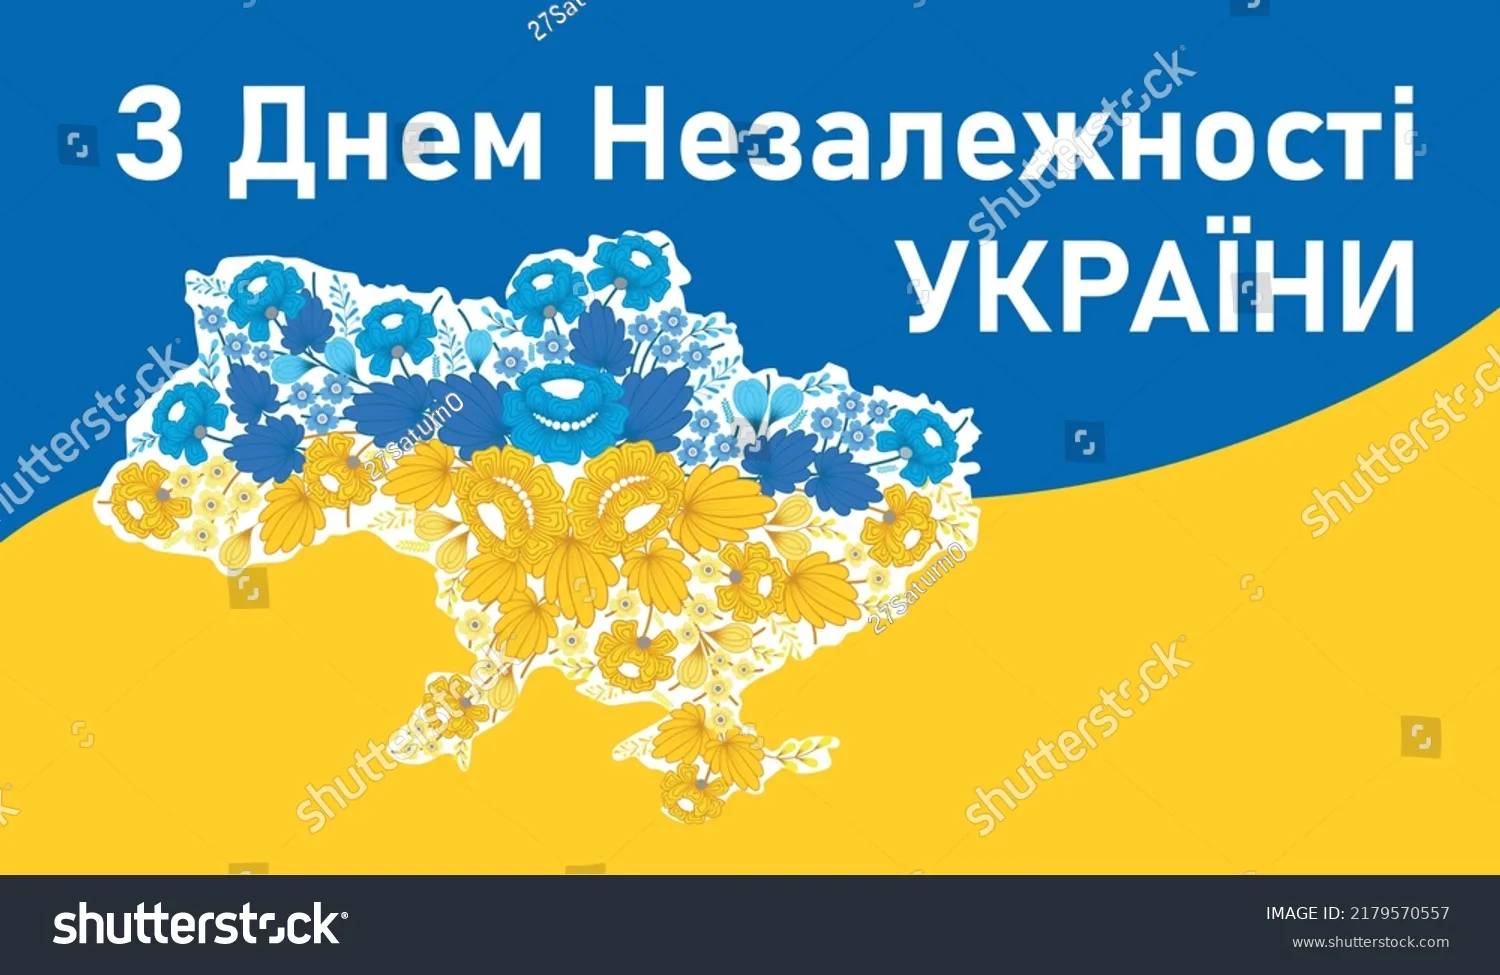 Фото Поздравления с днем независимости Украины #36